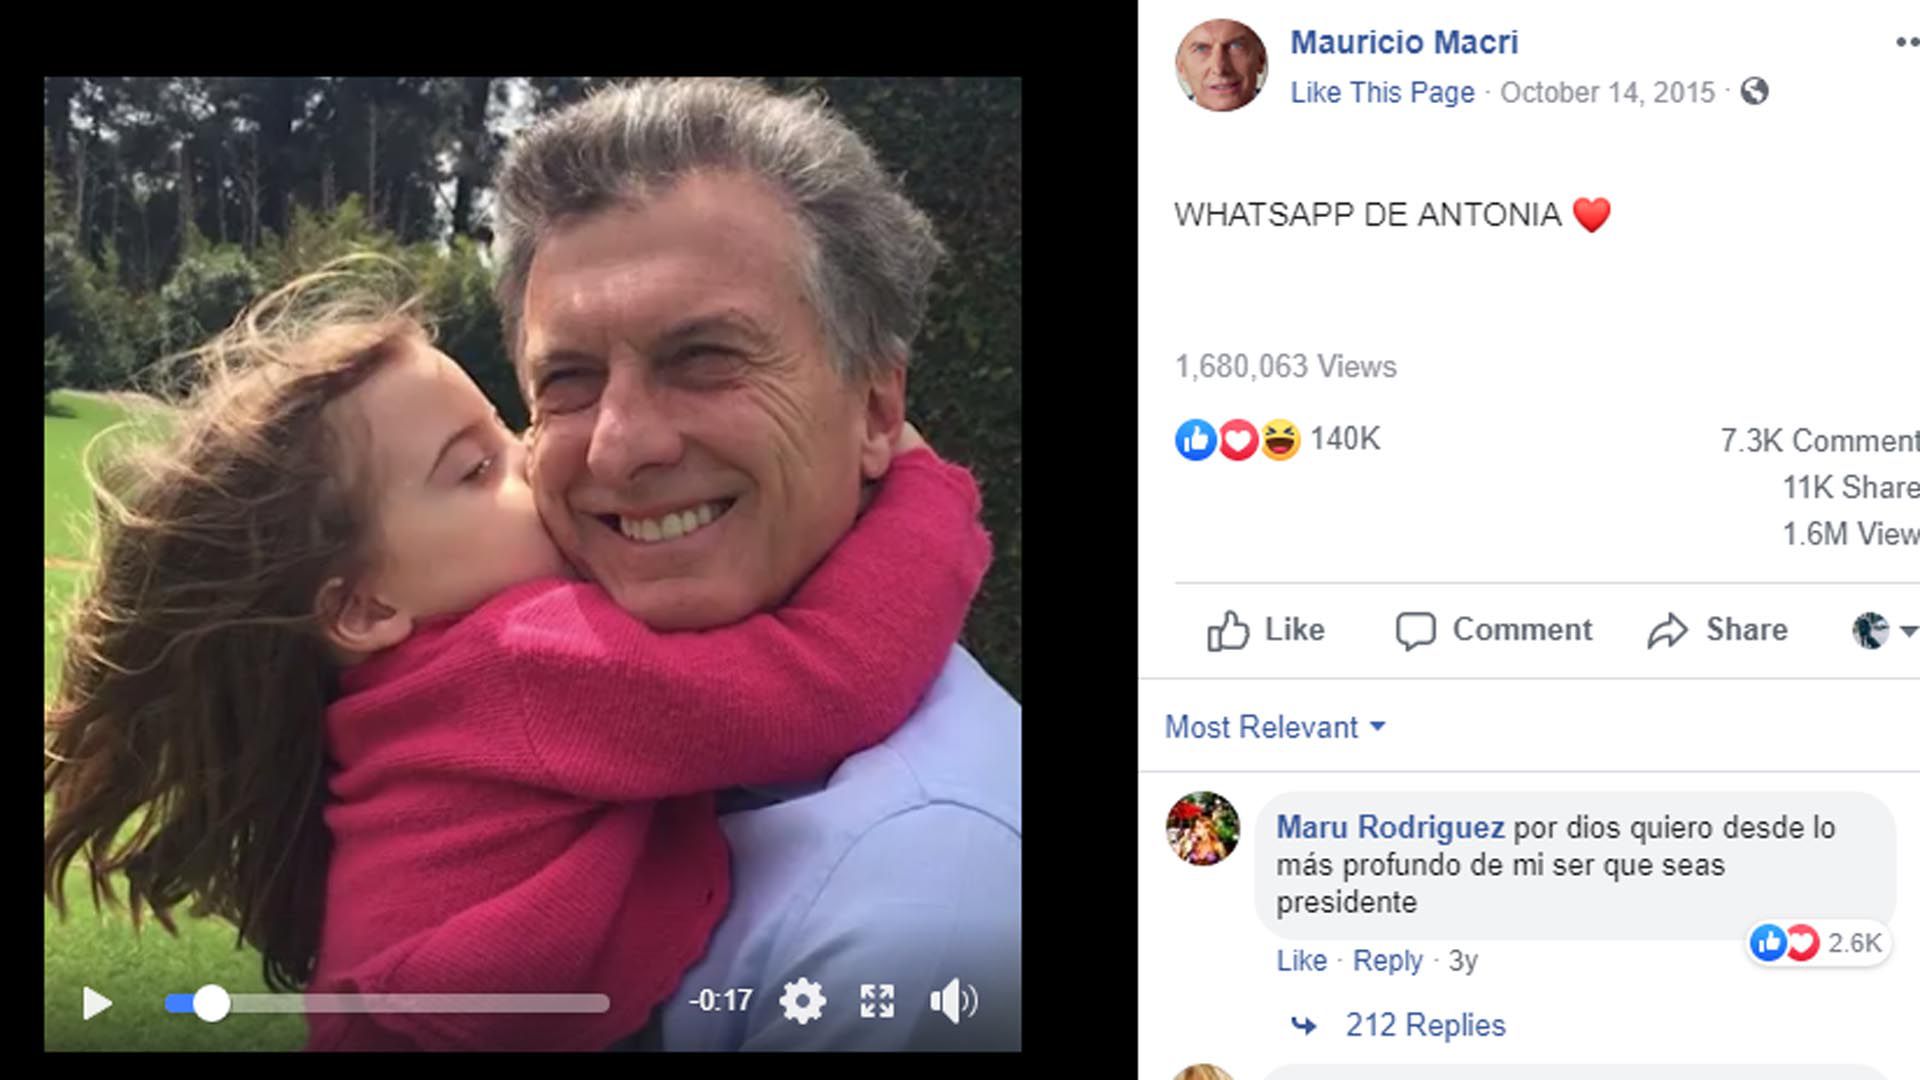 Uno de los posteos que mayor interacción tuvo muestra a Macri con su hija Antonia, y un mensaje de WhatsApp que le mandó después de un acto